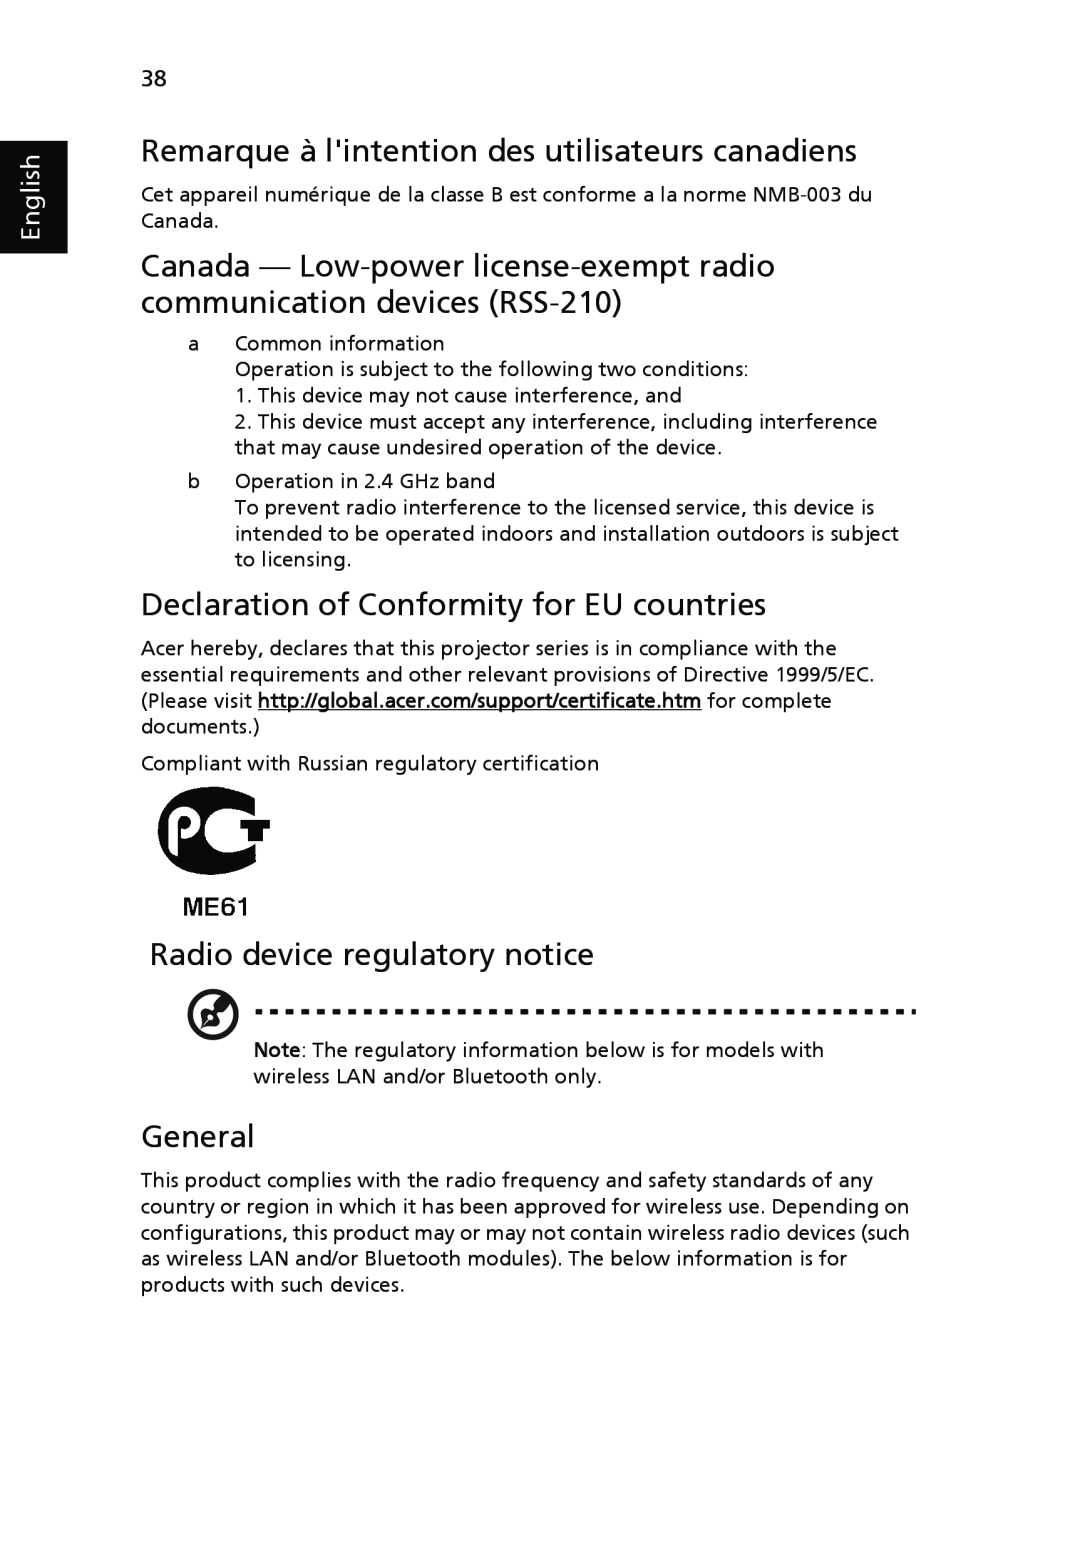 Acer P3150 Series Remarque à lintention des utilisateurs canadiens, Declaration of Conformity for EU countries, General 